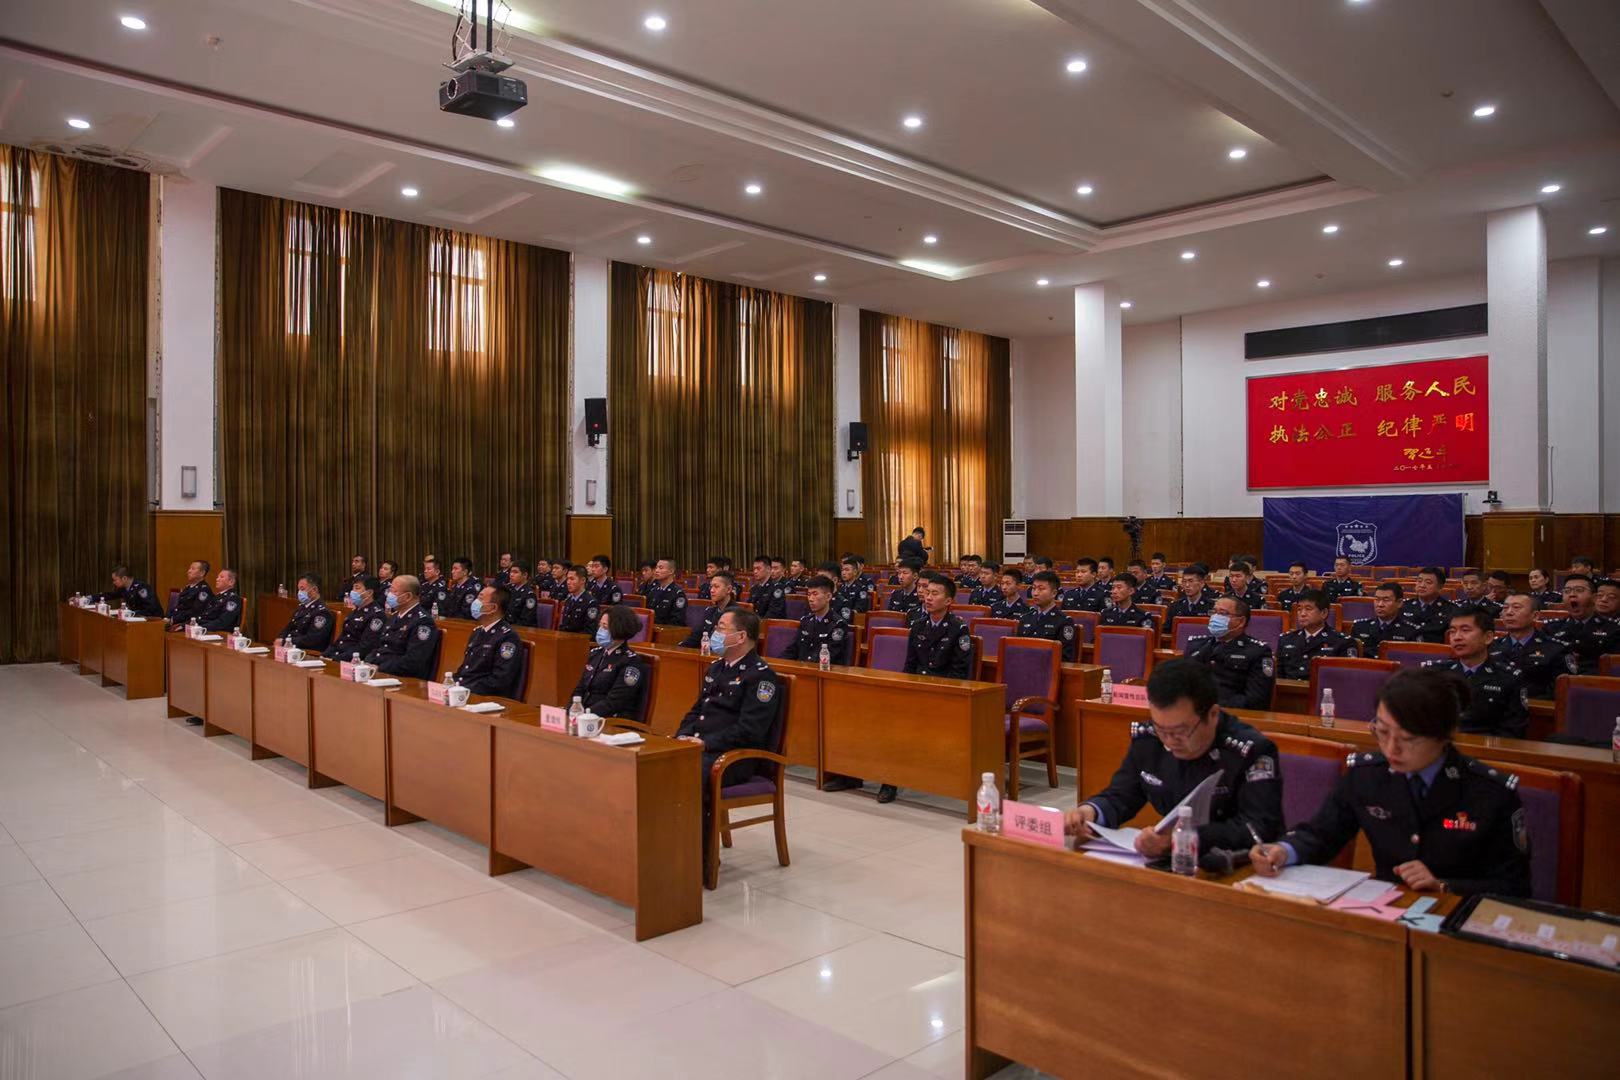 黑龙江省举办公安民警法律知识竞赛